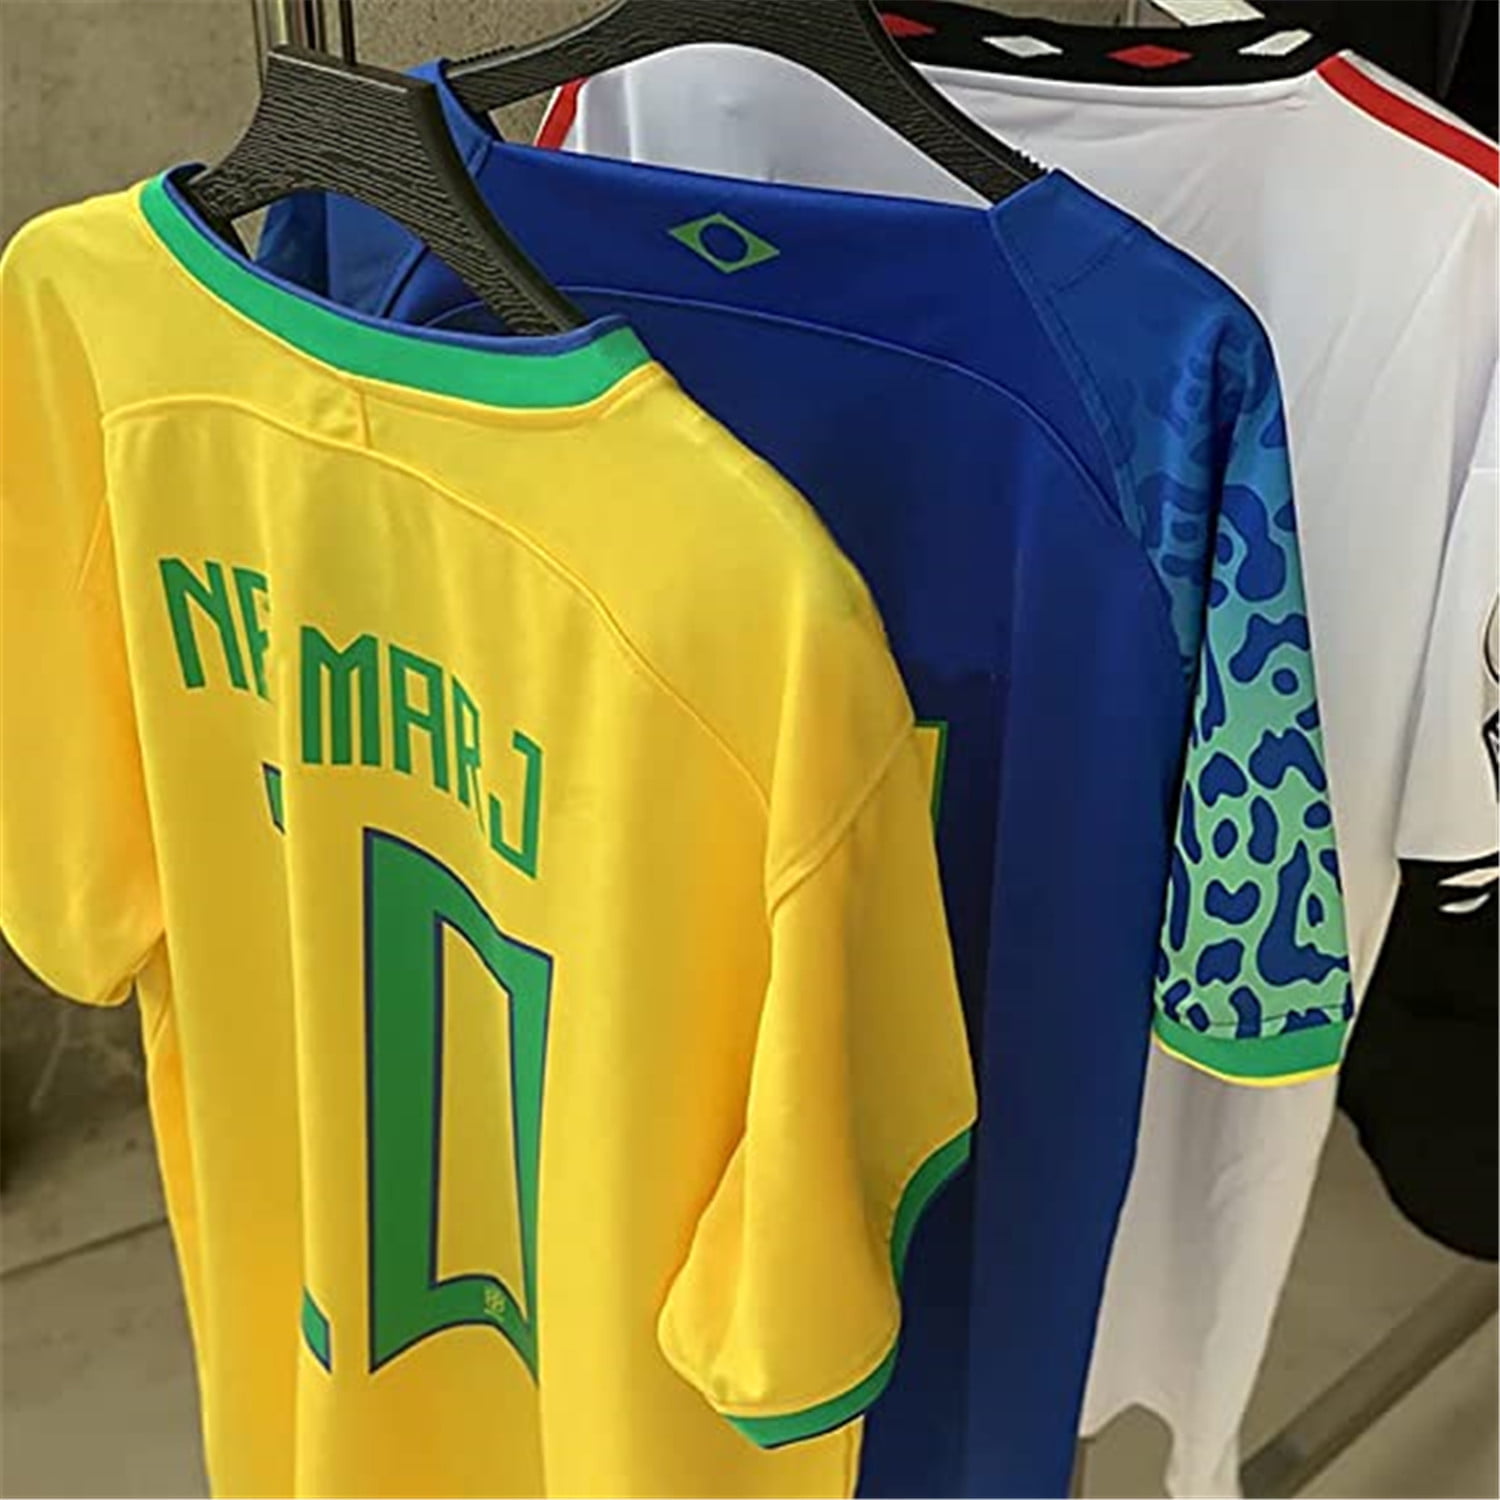 brazil soccer jersey england